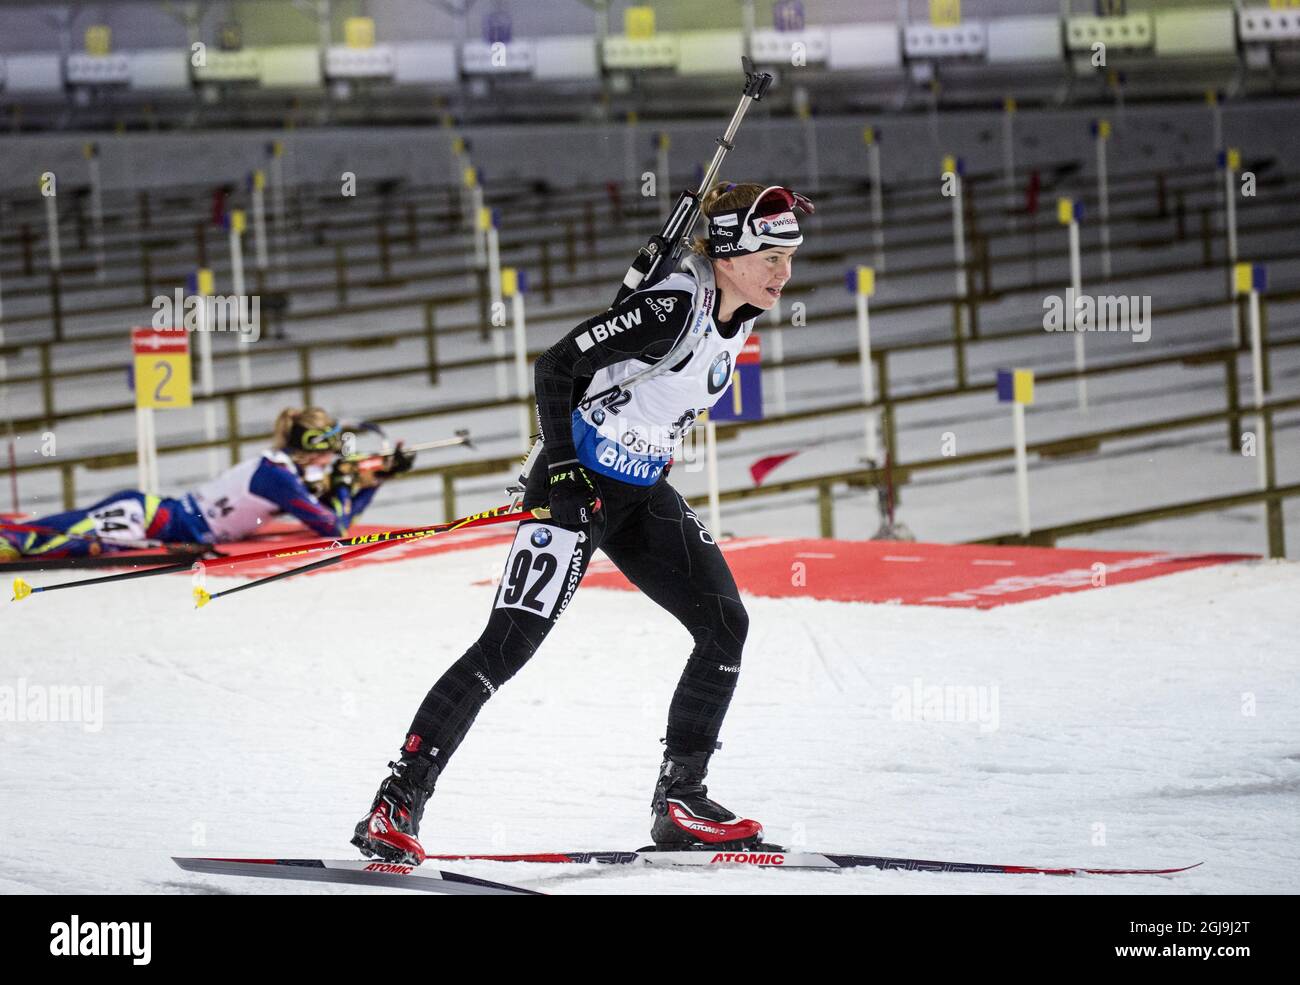 Susanna Meinen in azione durante la gara di sprint femminile di 7.5 km alla IBU Biathlon World Cup di Ostersund, Svezia, il 5 dicembre 2015. Foto: Christine Olsson / TT / code 10430 Foto Stock